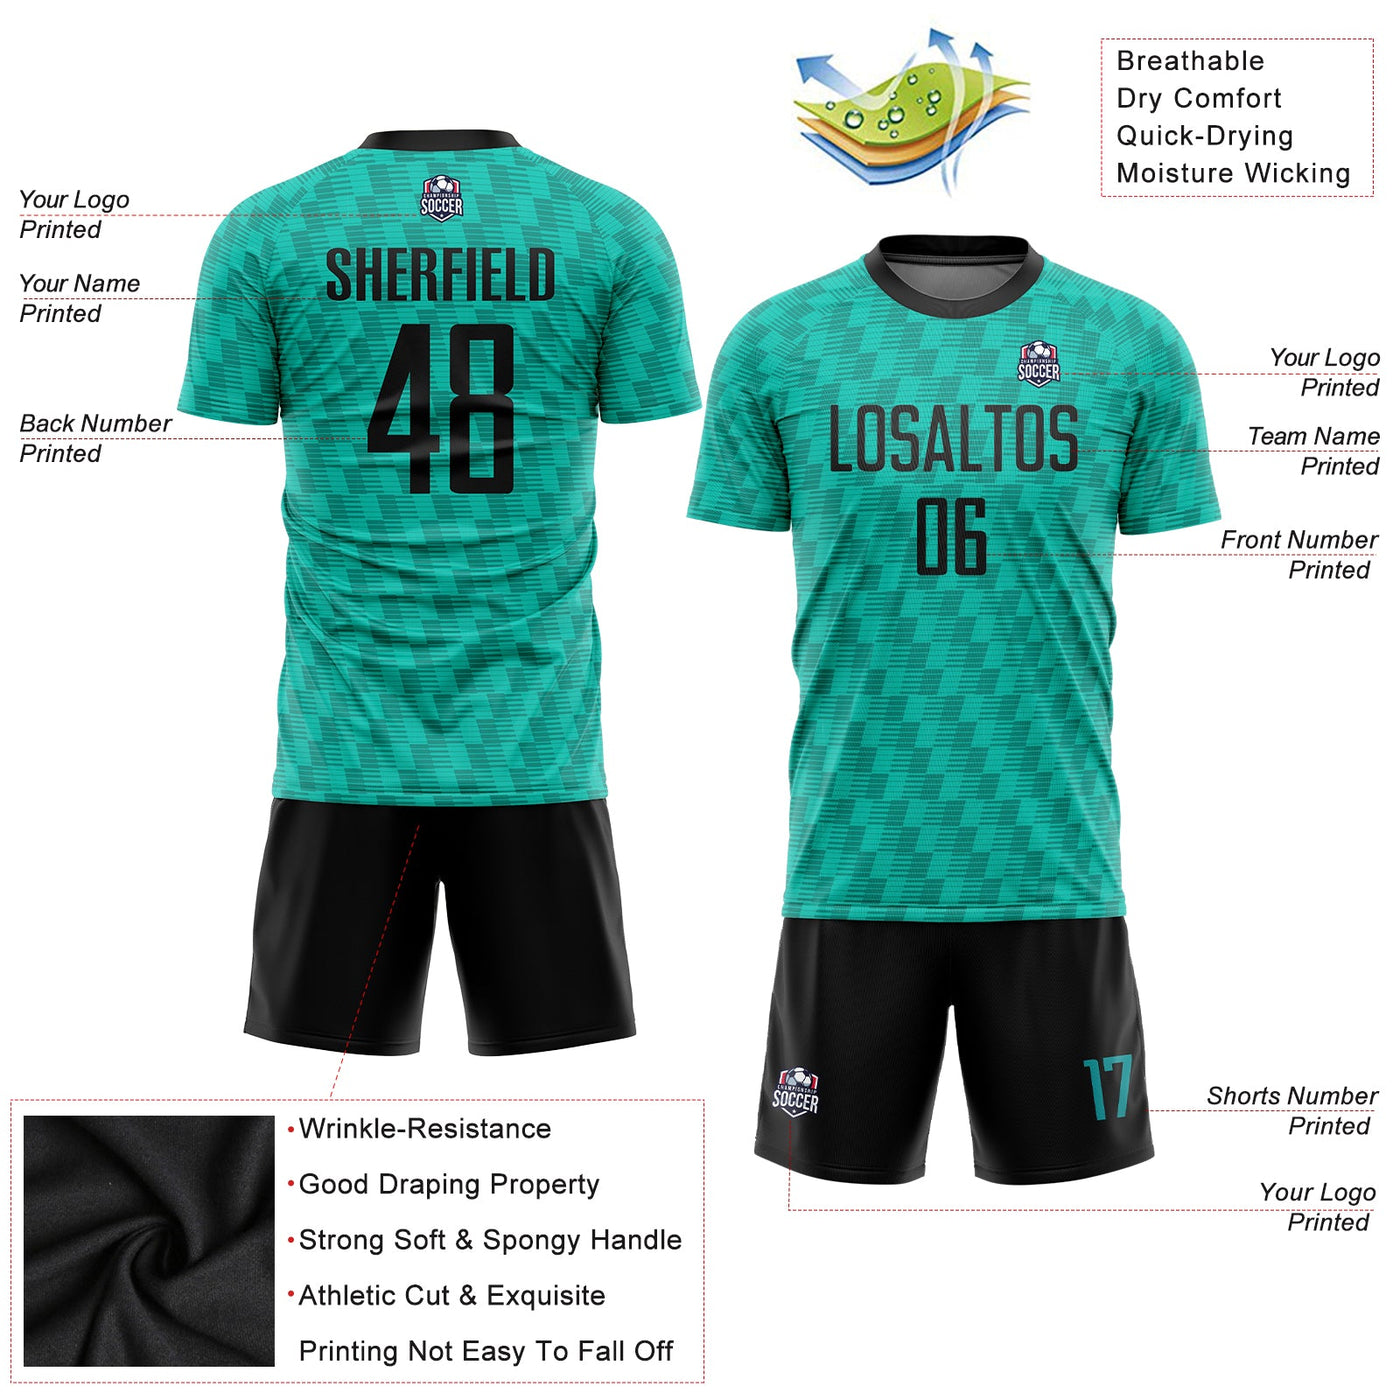 Custom Kelly Green Black Sublimation Soccer Uniform Jersey